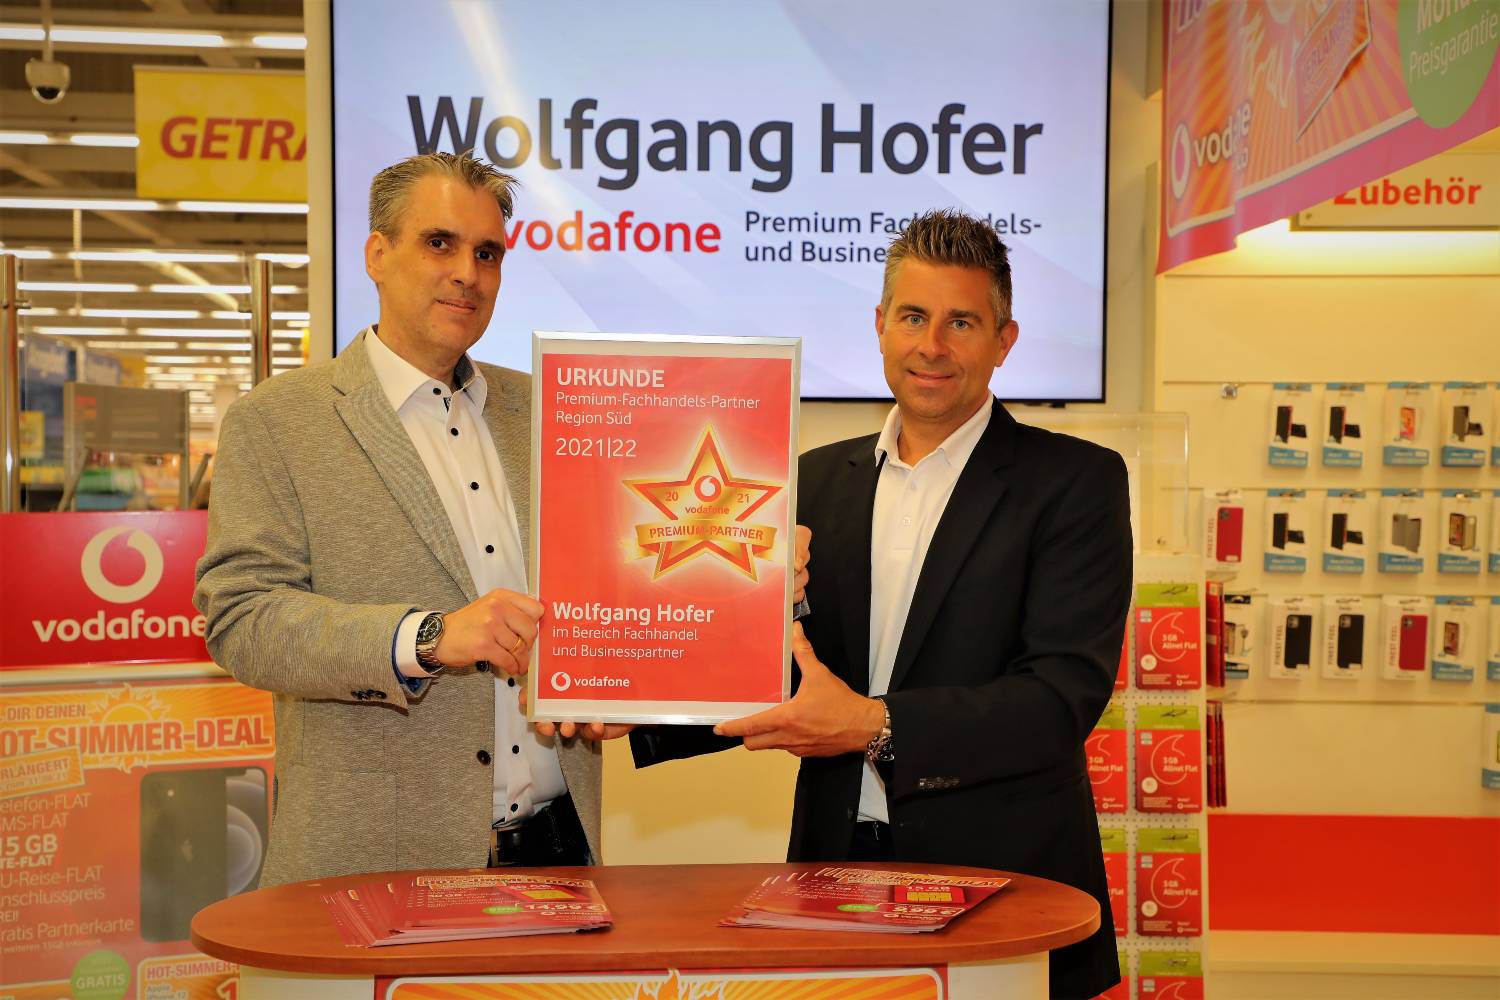 Wolfgang Hofer Vodafone Nürnberg